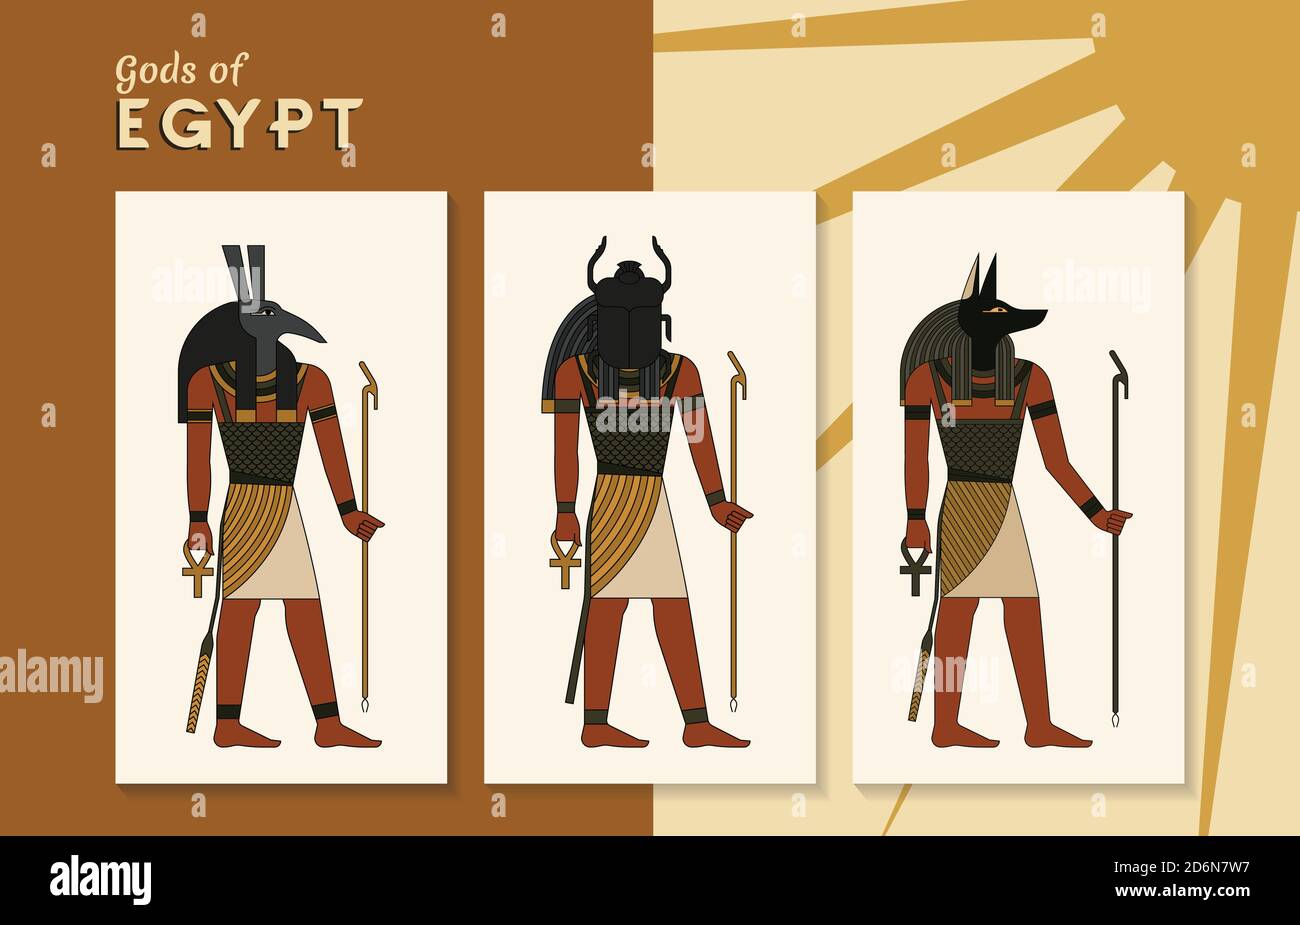 Une collection d'illustrations vectorielles des anciens dieux égyptiens Thoth, Khepri et Anubis de l'ankh. Illustration de Vecteur